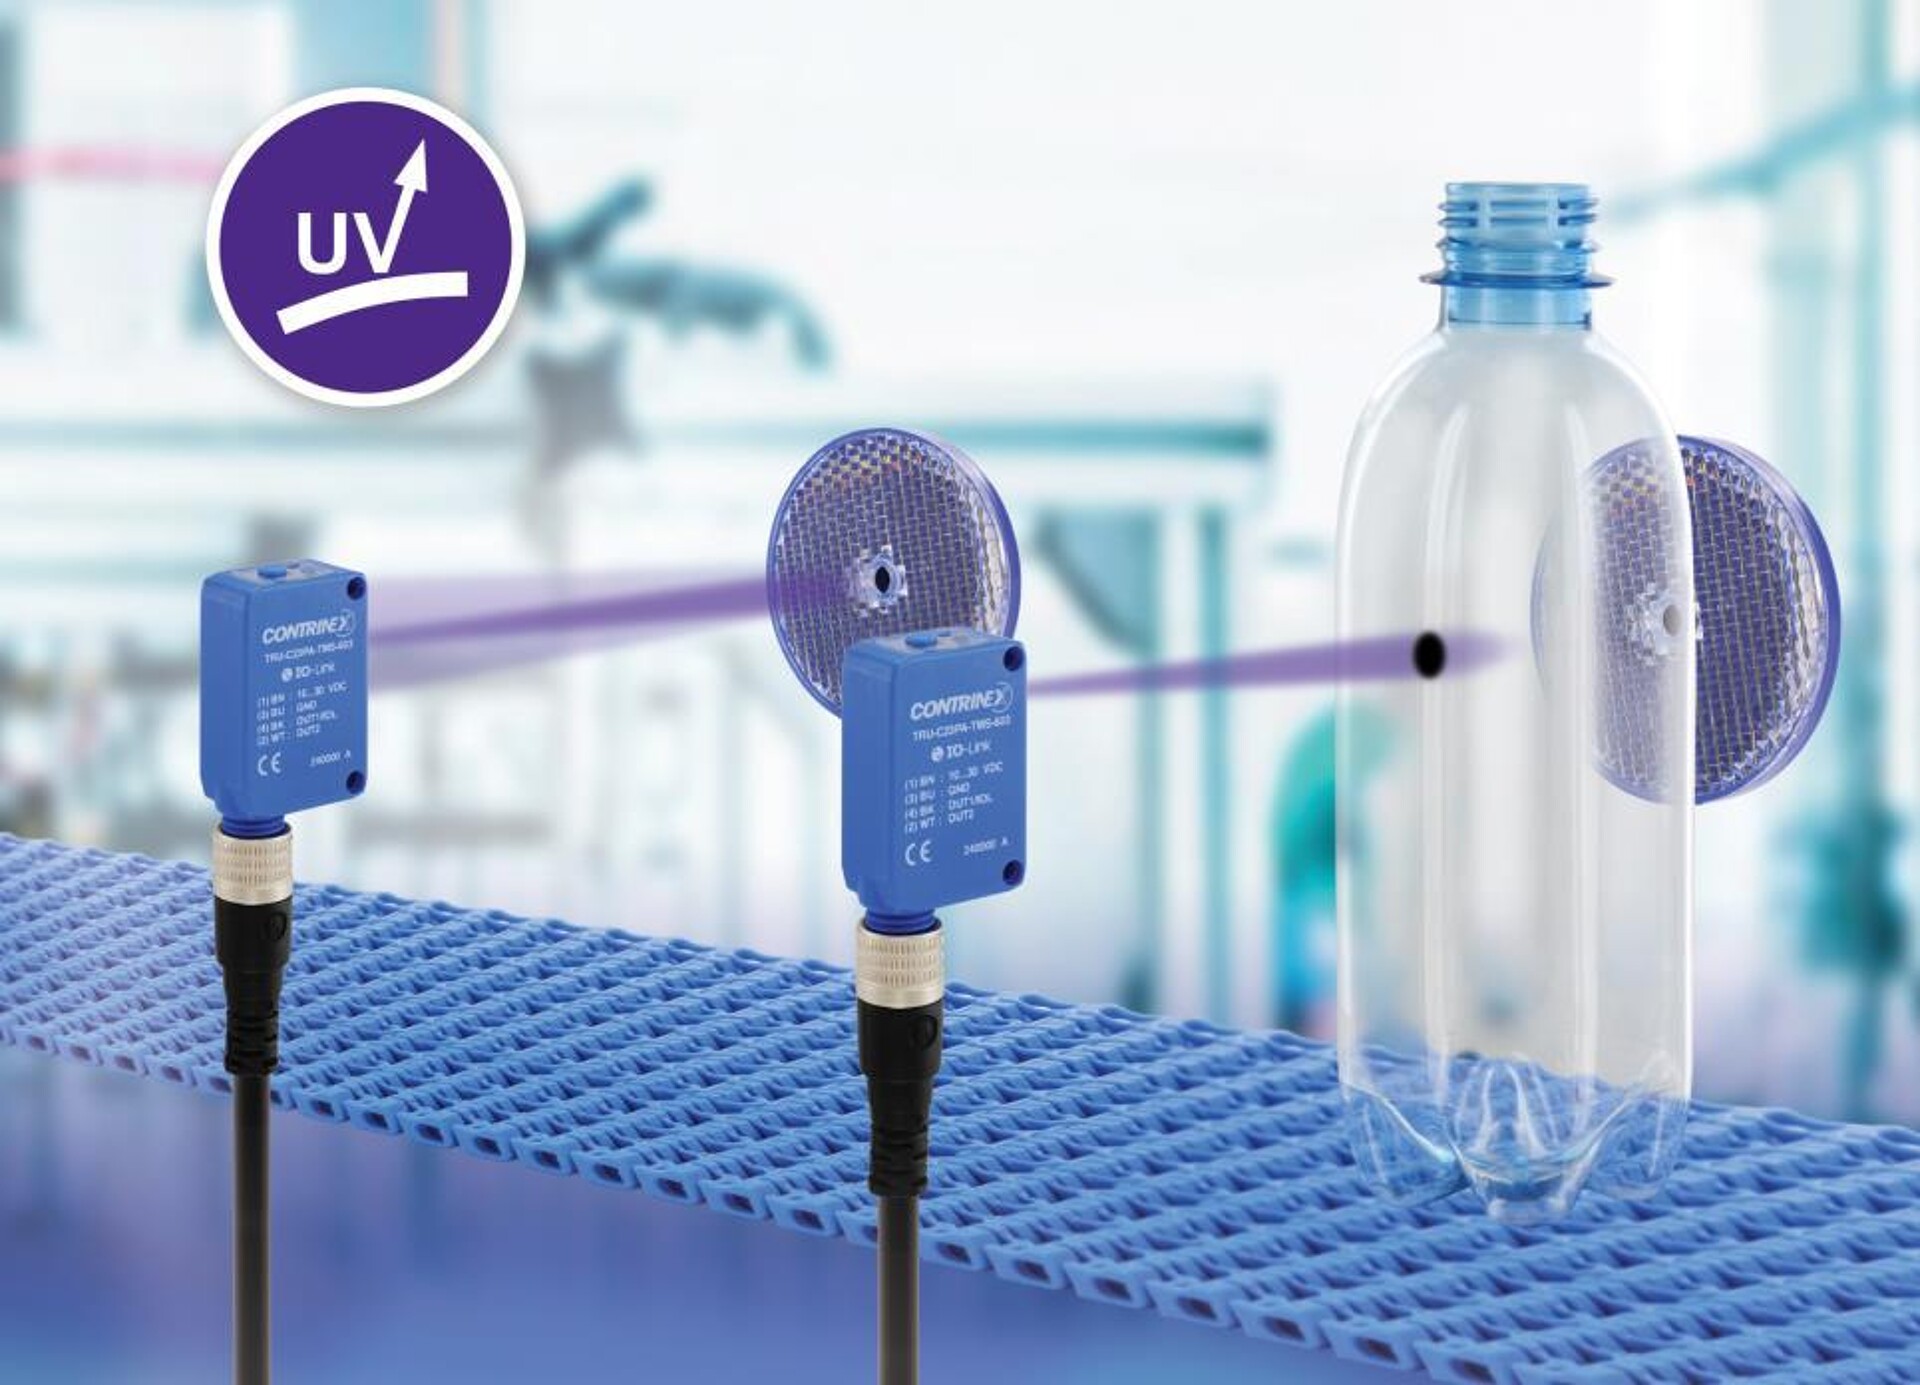 Der photoelektrische Sensor TRU-C23 nutzt UV-Licht und erkennt zuverlässig Objekte mit hoher Zuverlässigkeit. (Foto: Contrinex) 